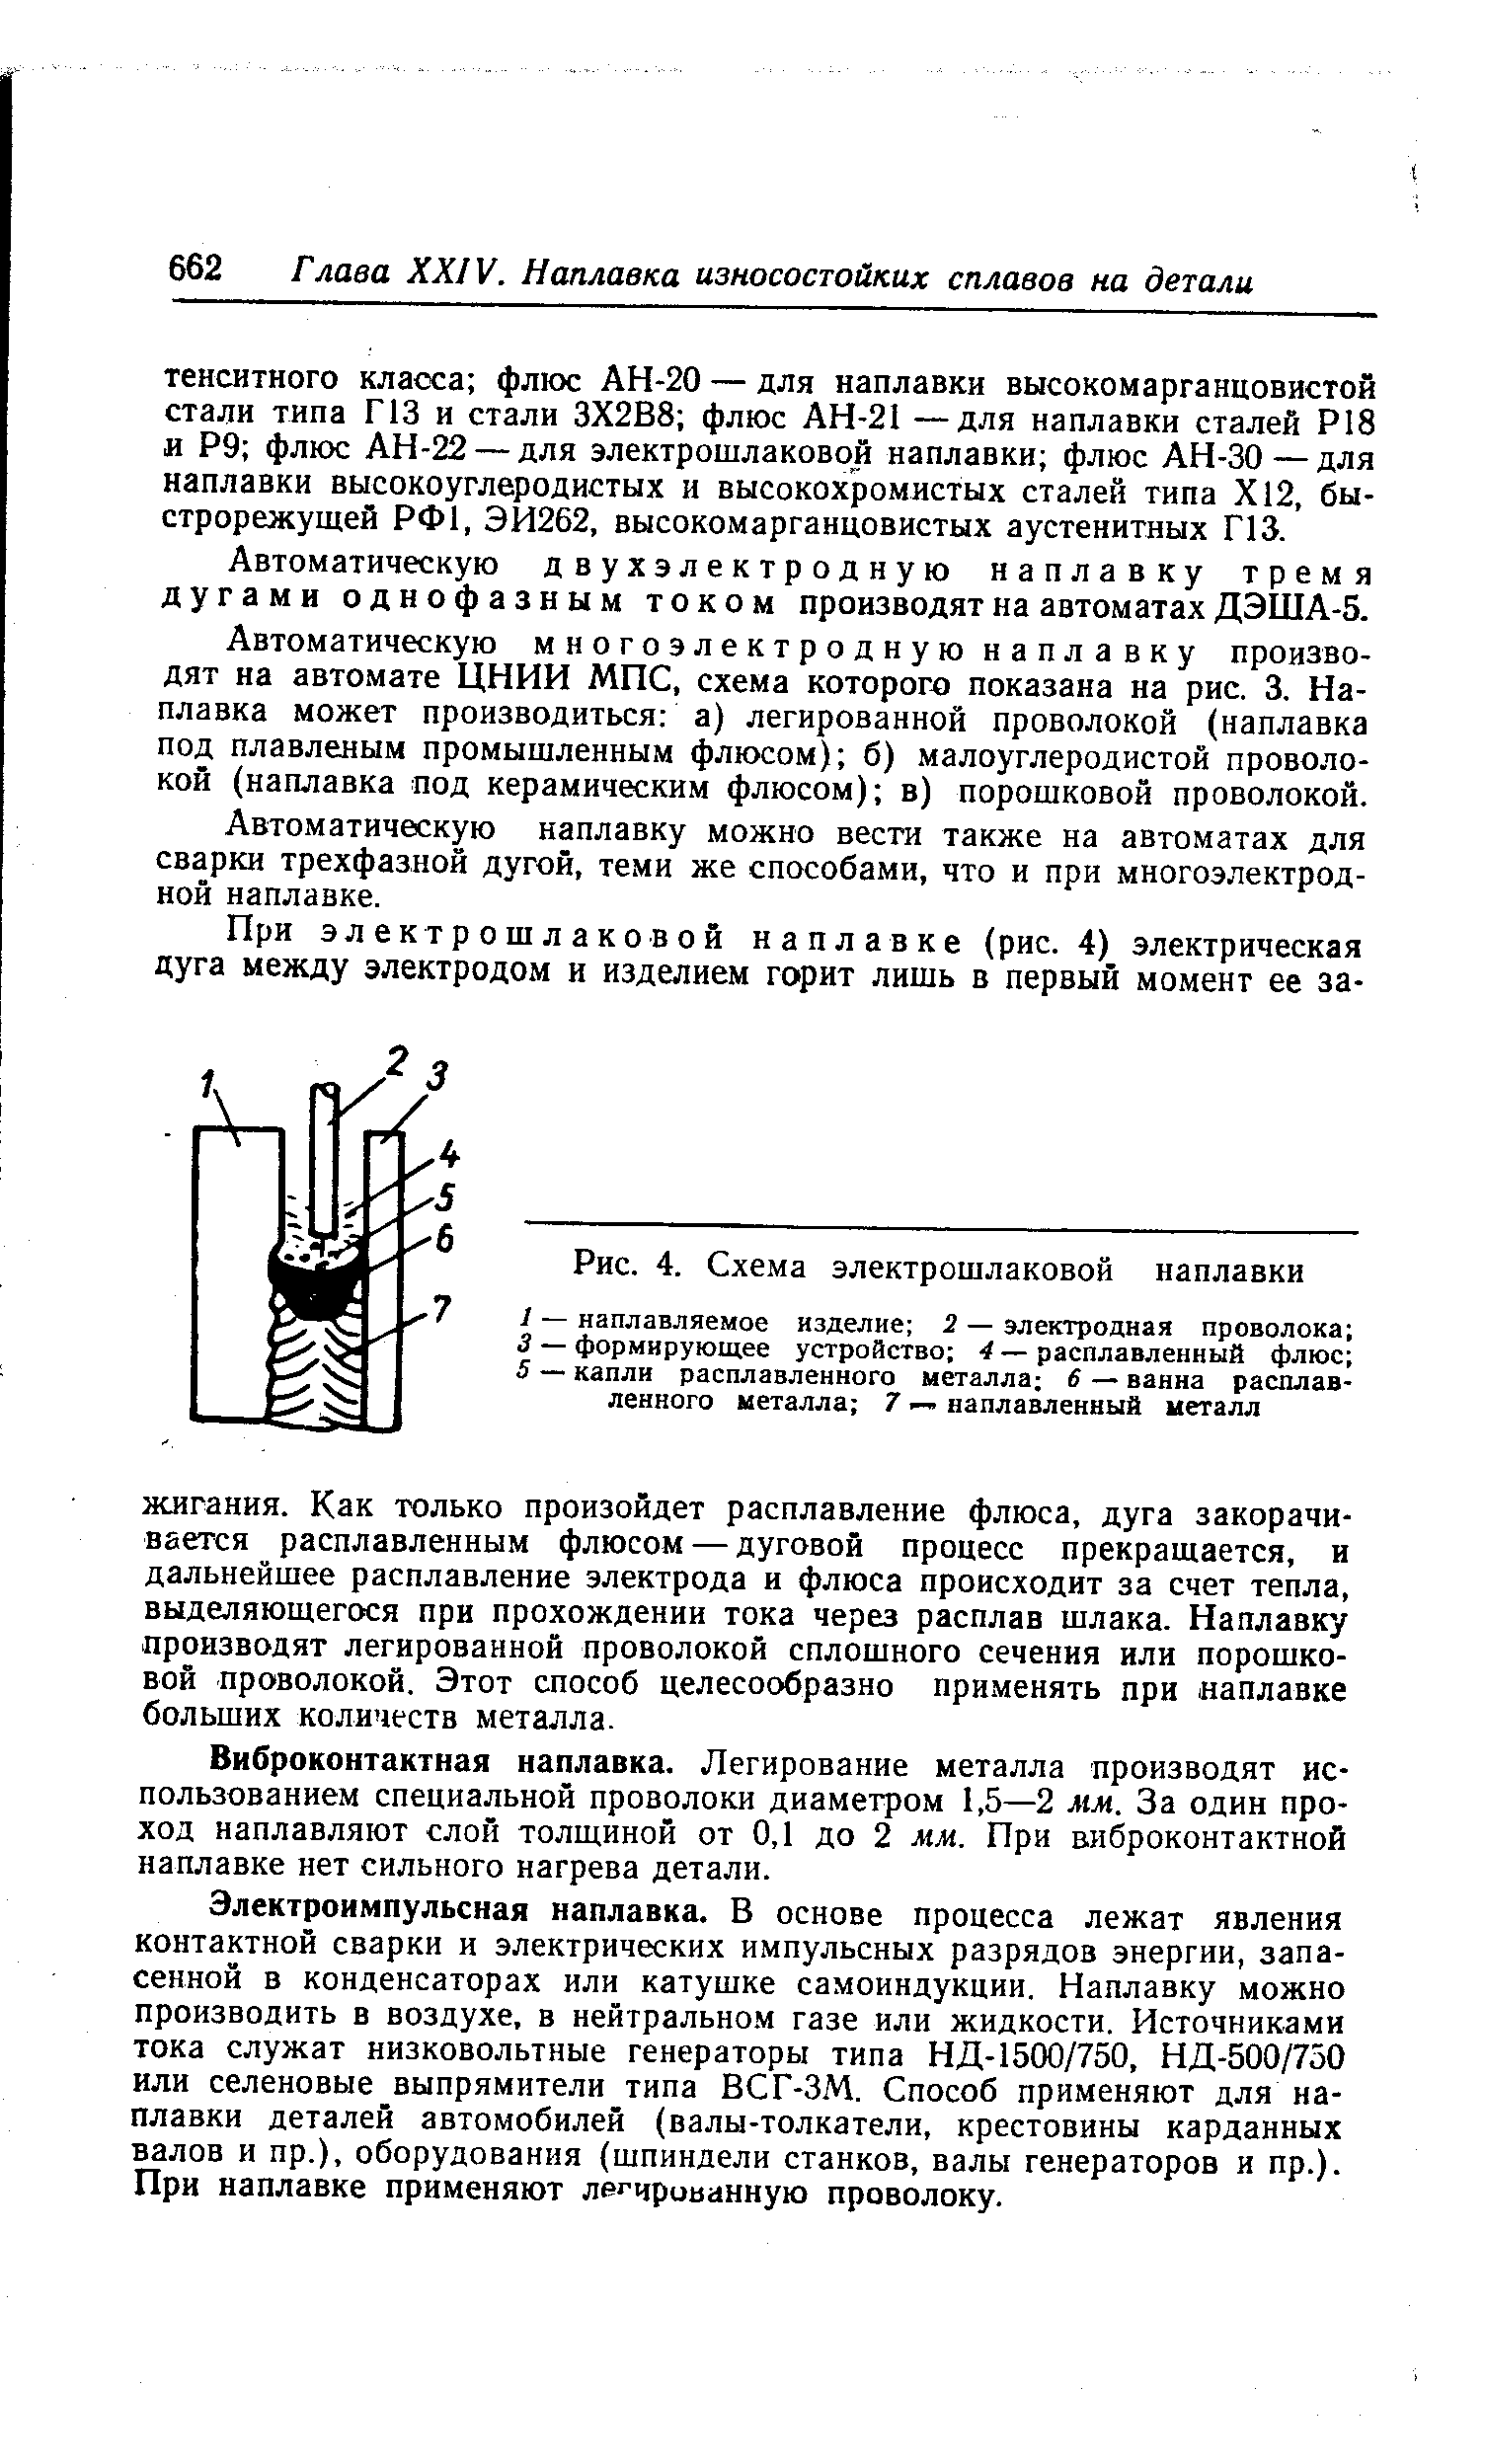 Рис. 4. Схема электрошлаковой наплавки
